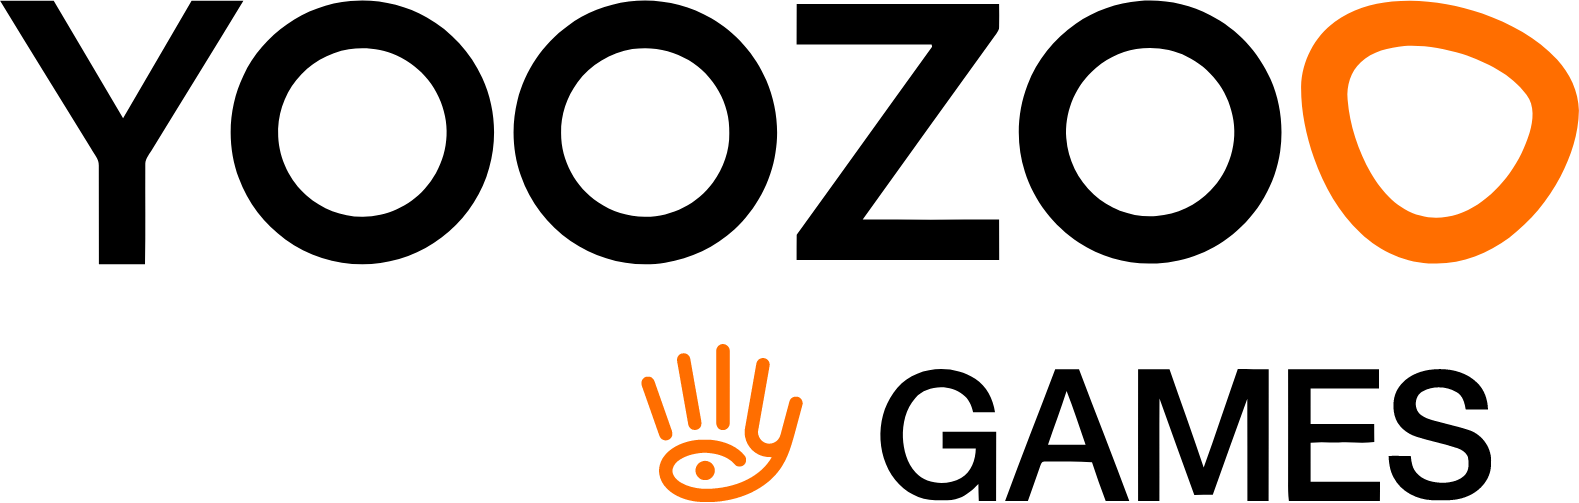 YOOZOO Interactive logo large (transparent PNG)